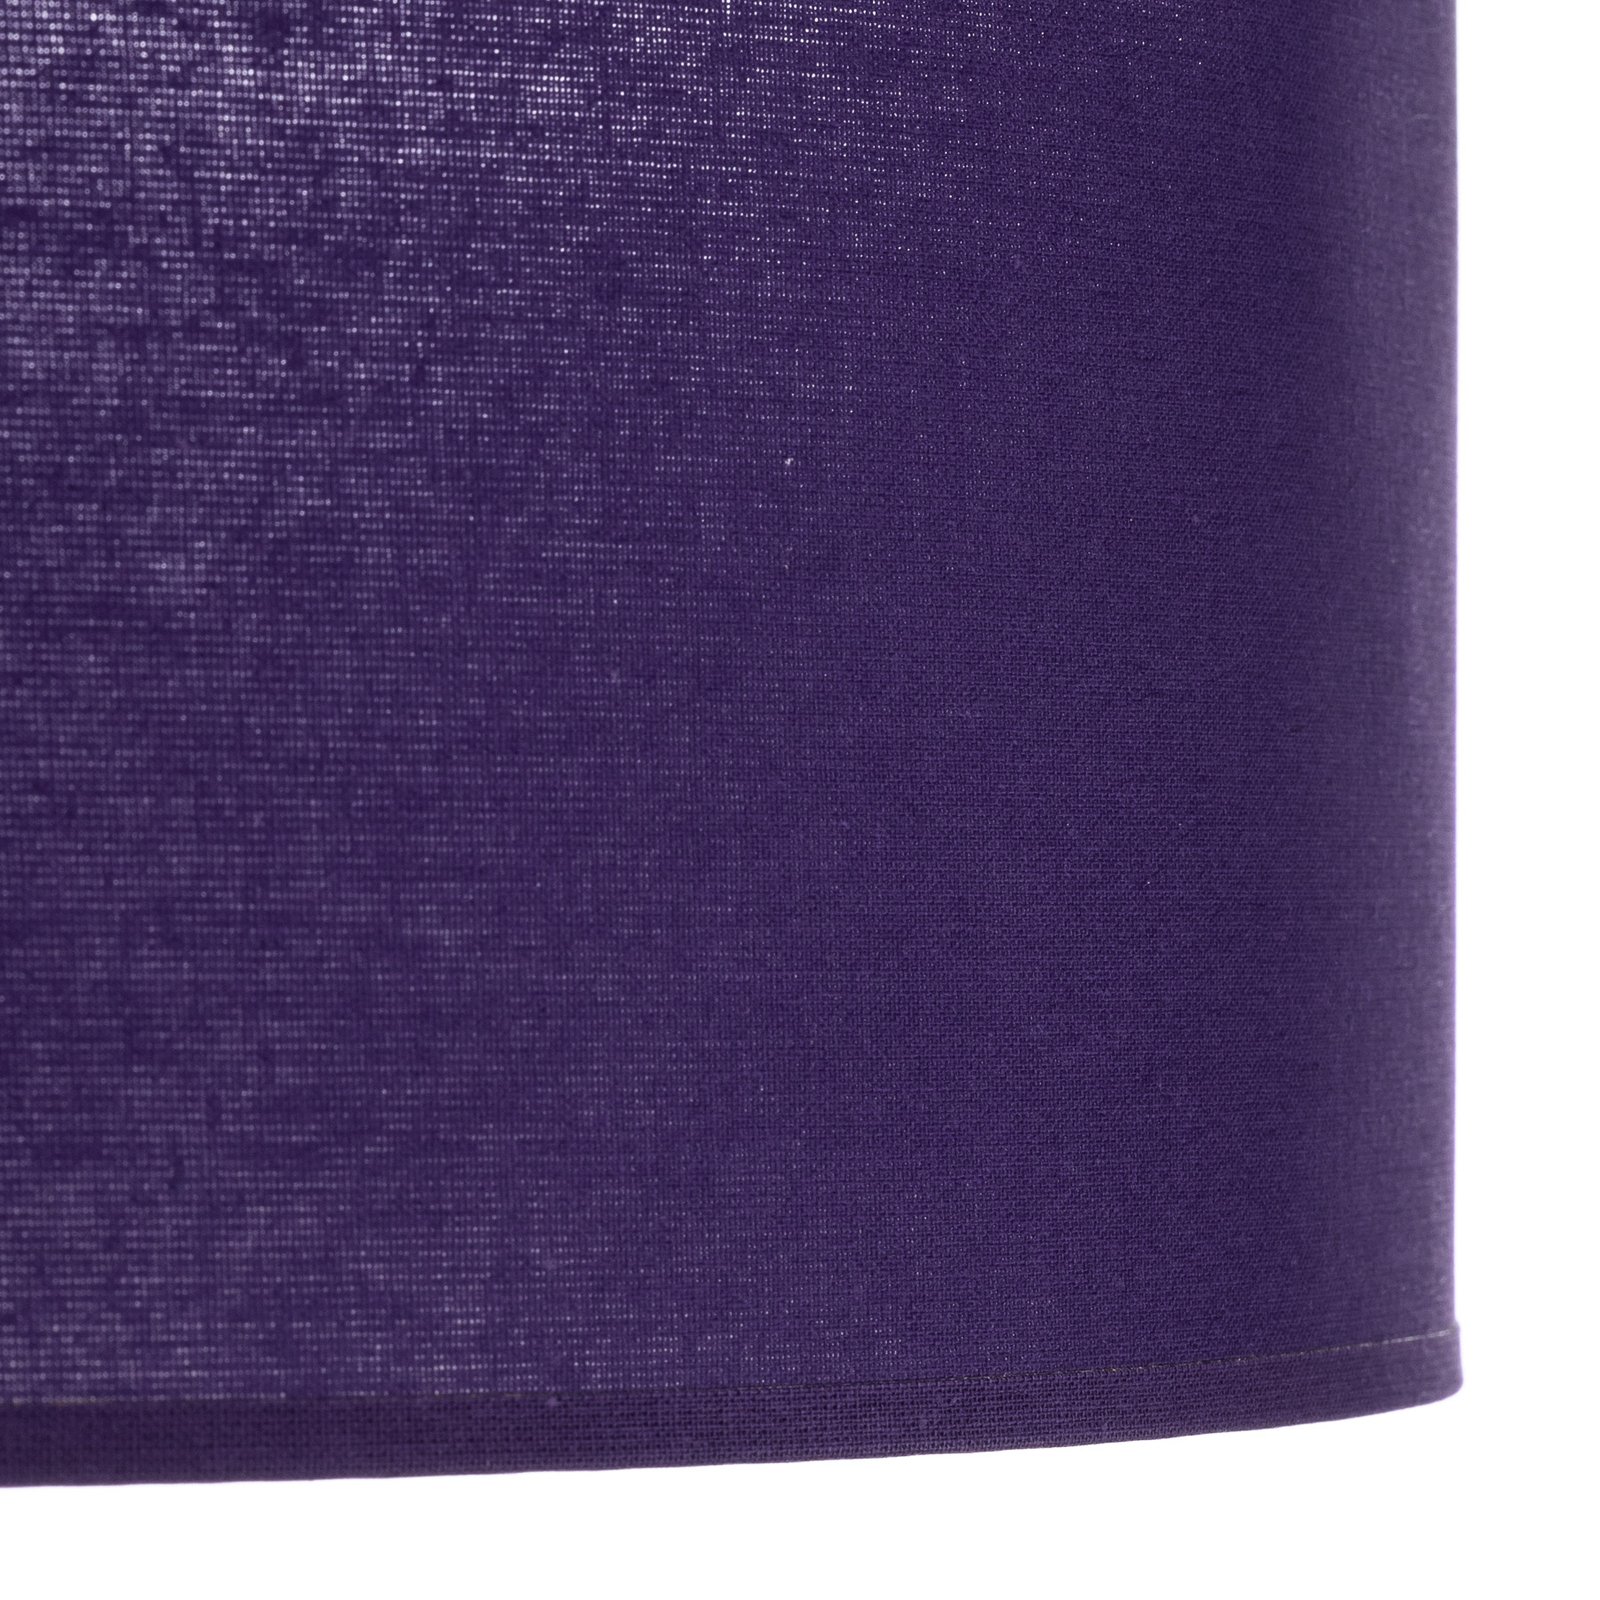 Euluna Roller Decke, Stoffschirm violett, Ø 50 cm